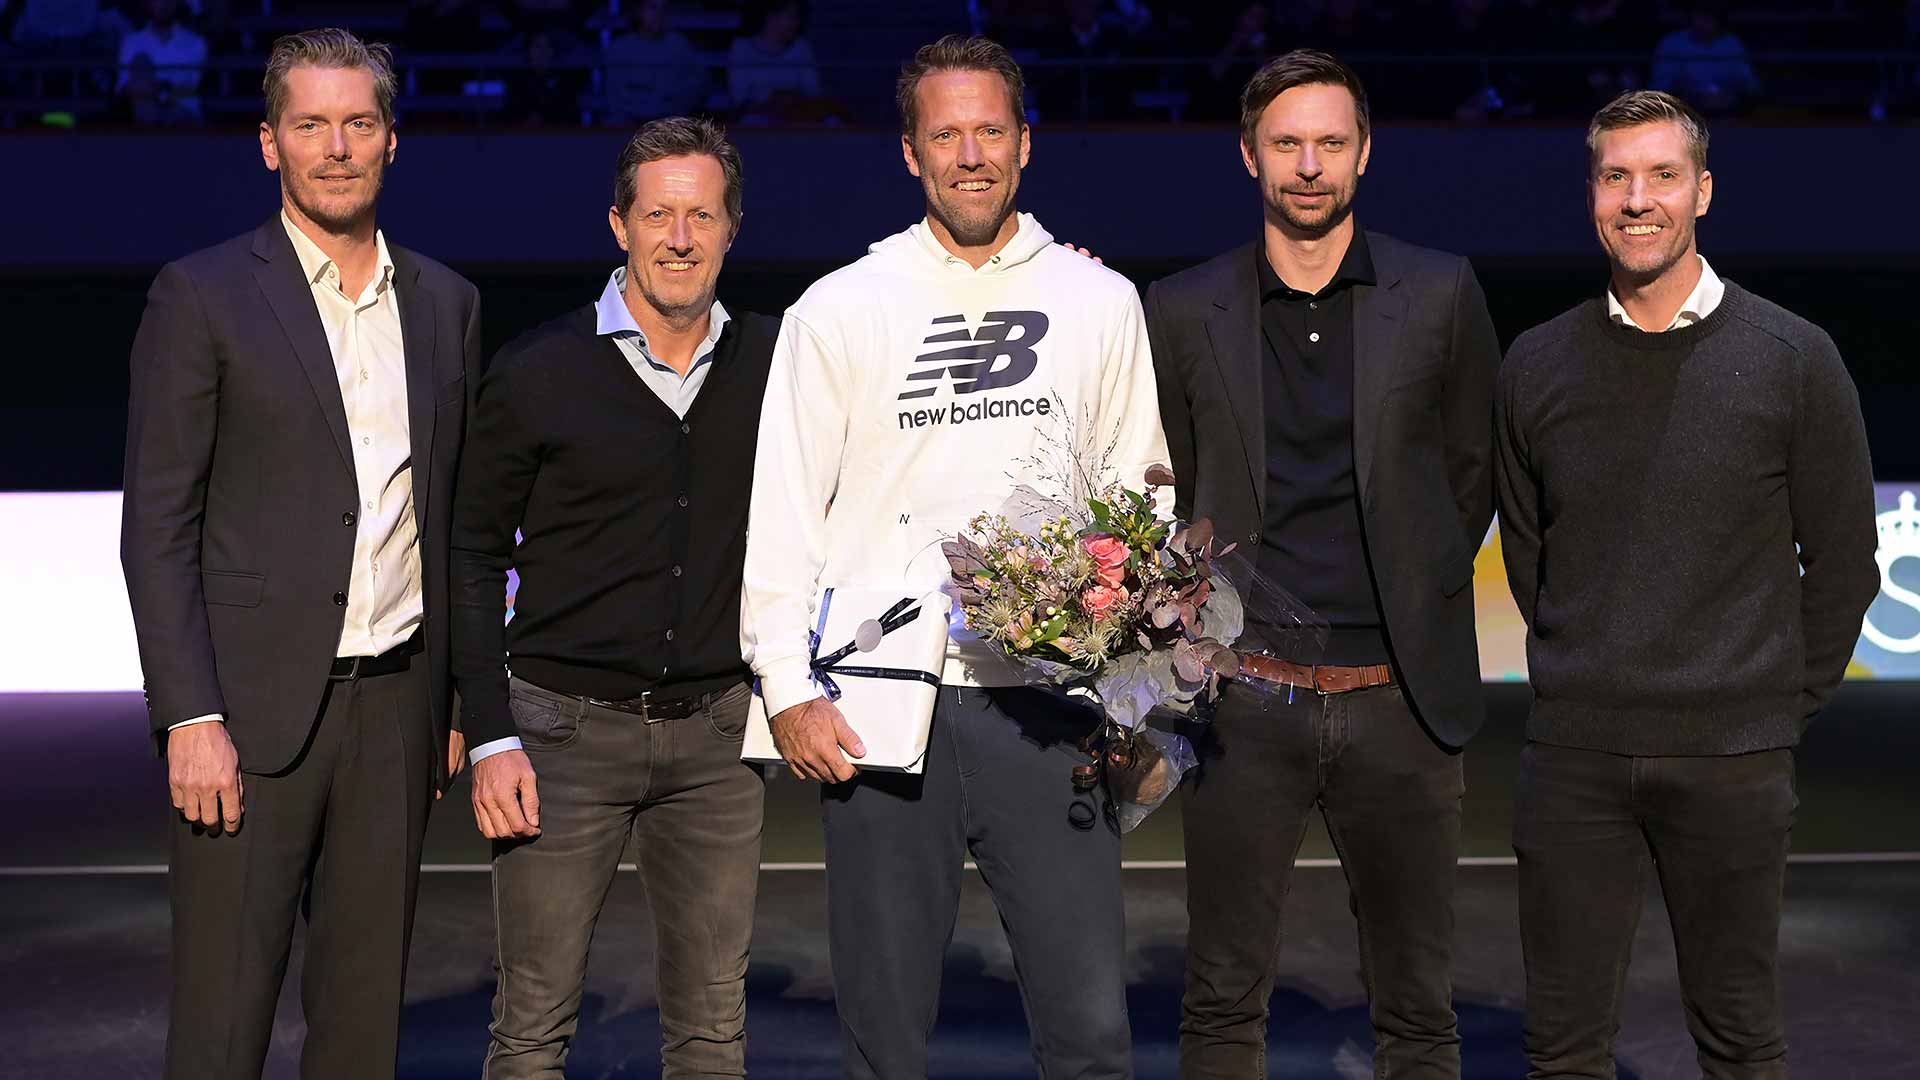 Thomas Enqvist, Jonas Bjorkman, Robert Lindstedt, Robin Soderling and Simon Aspelin pose during Lindstedt's retirement ceremony in Stockholm.